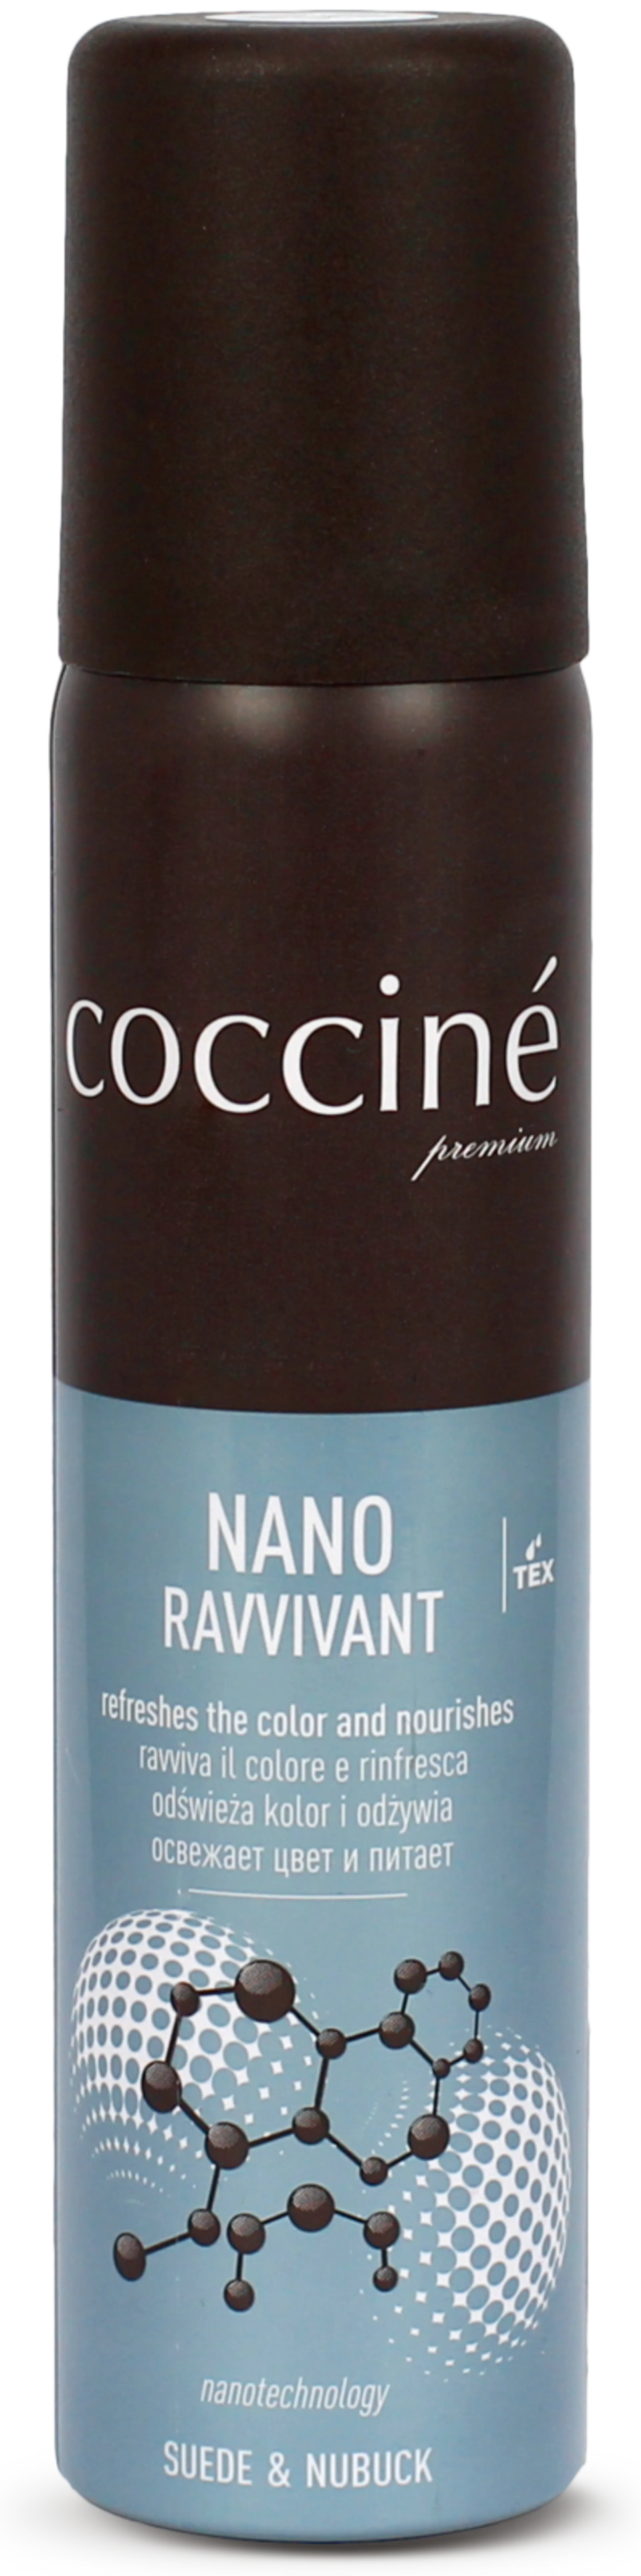 Coccine Nano Ravvivant hoitoaine mokkanahalle ja nupukille 100 ml, neutral